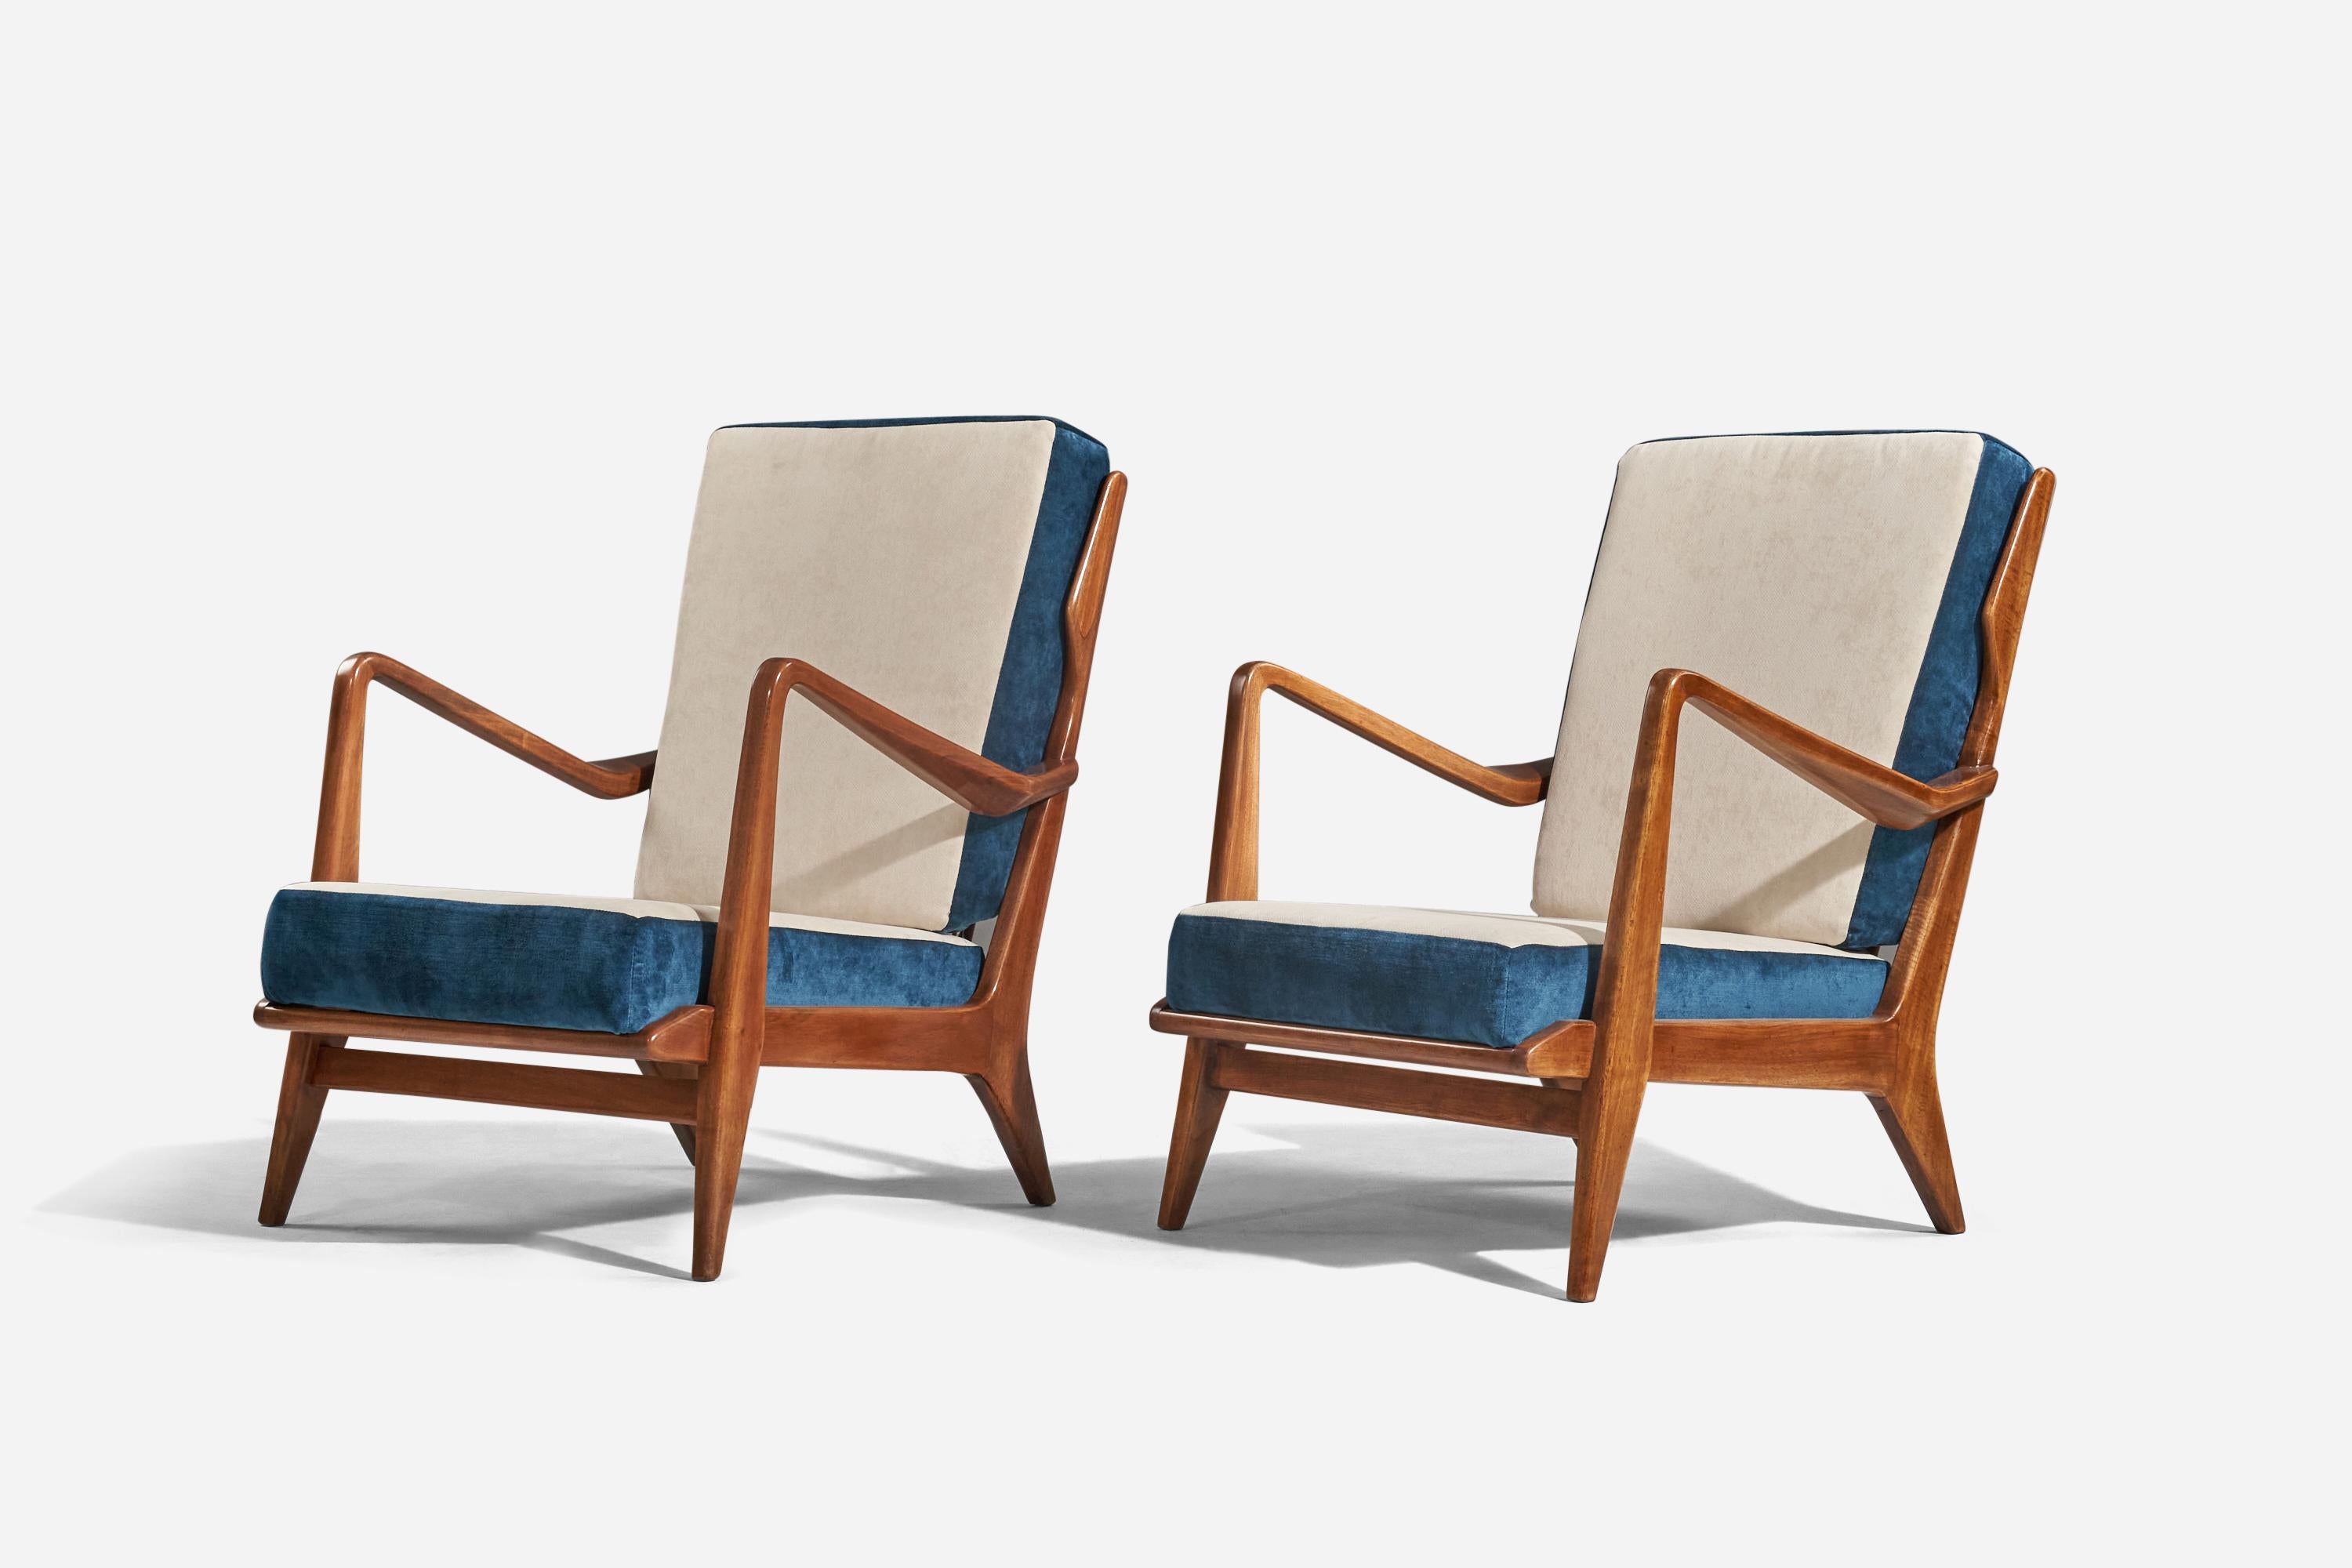 Ein Paar Sessel aus Nussbaumholz und blau-weißem Samt, entworfen von Gio Ponti und hergestellt von Cassina, Italien, 1950er Jahre. 

Mit einem Echtheitszertifikat aus dem Archiv von Gio Ponti.